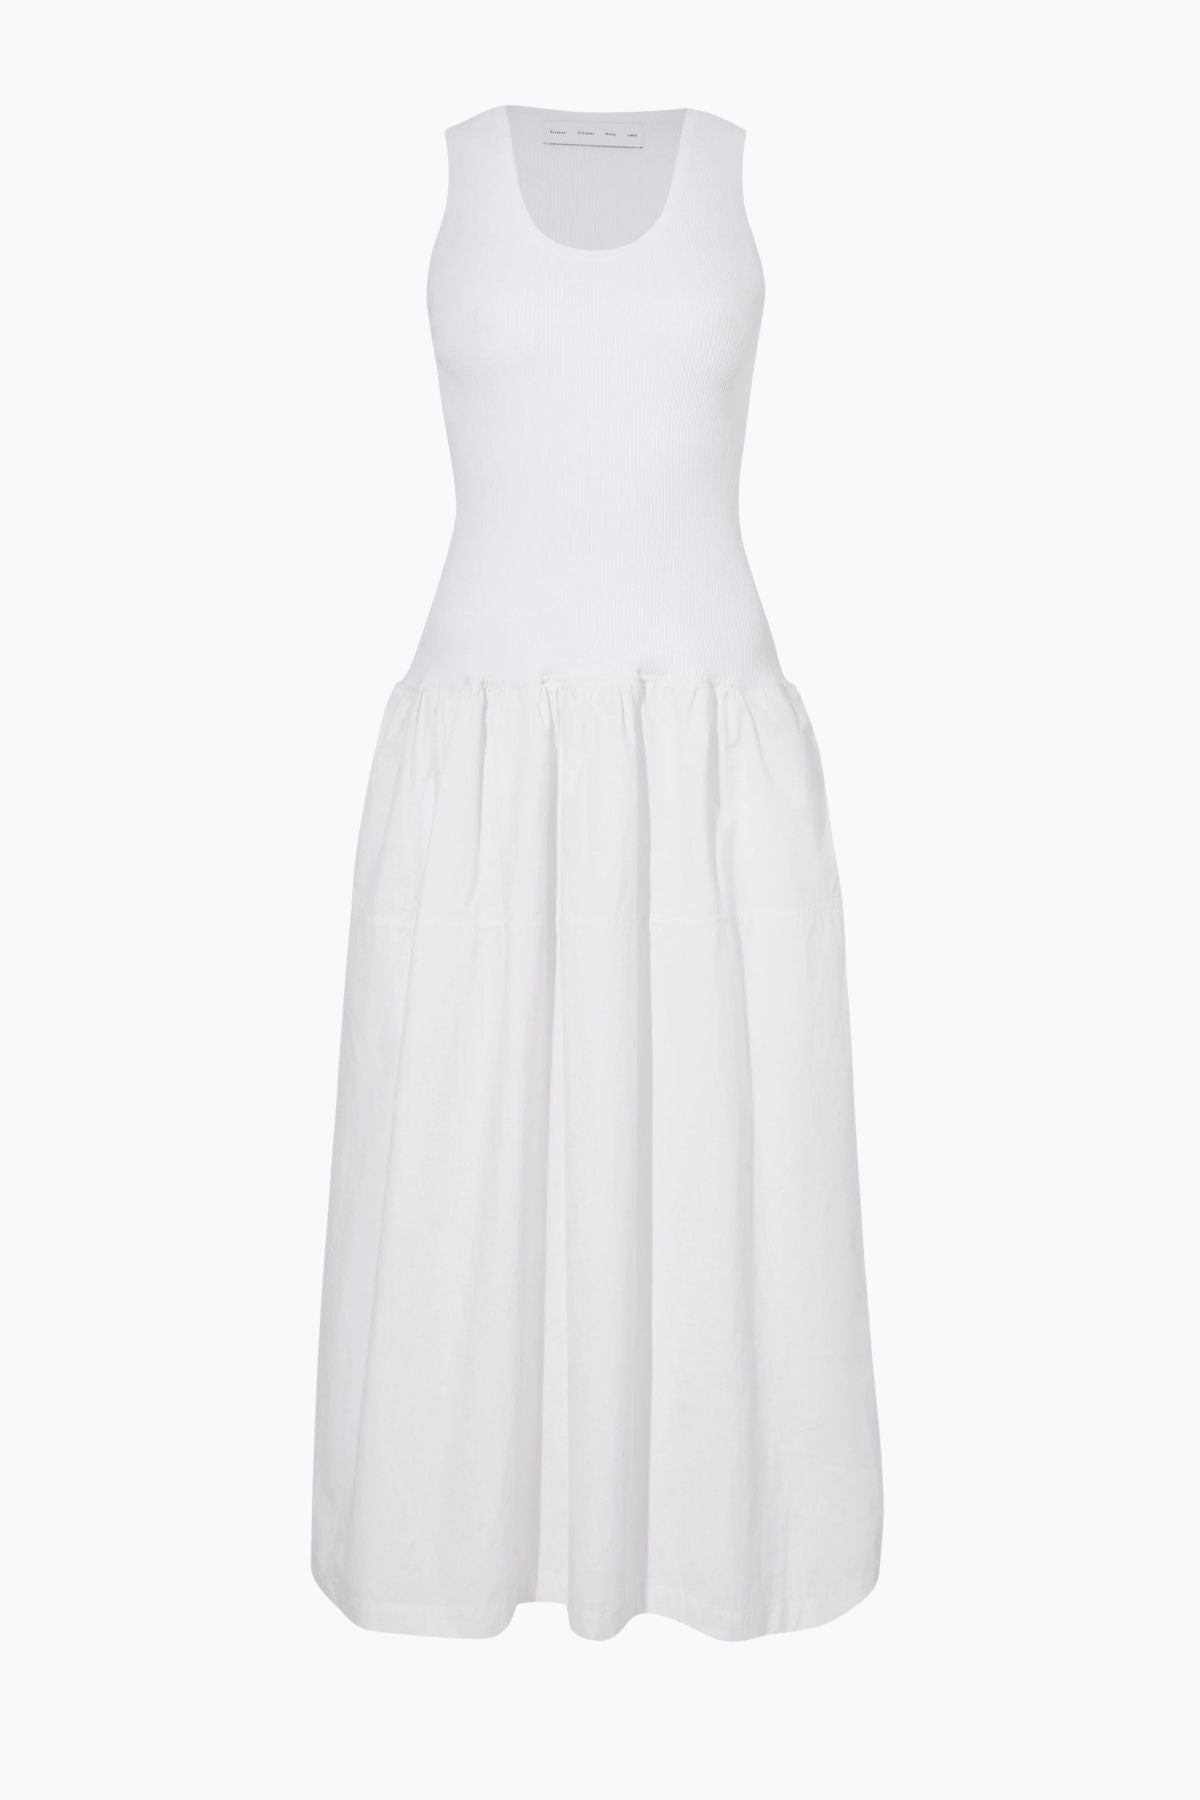 Proenza Schouler White Label Malia Dress - White